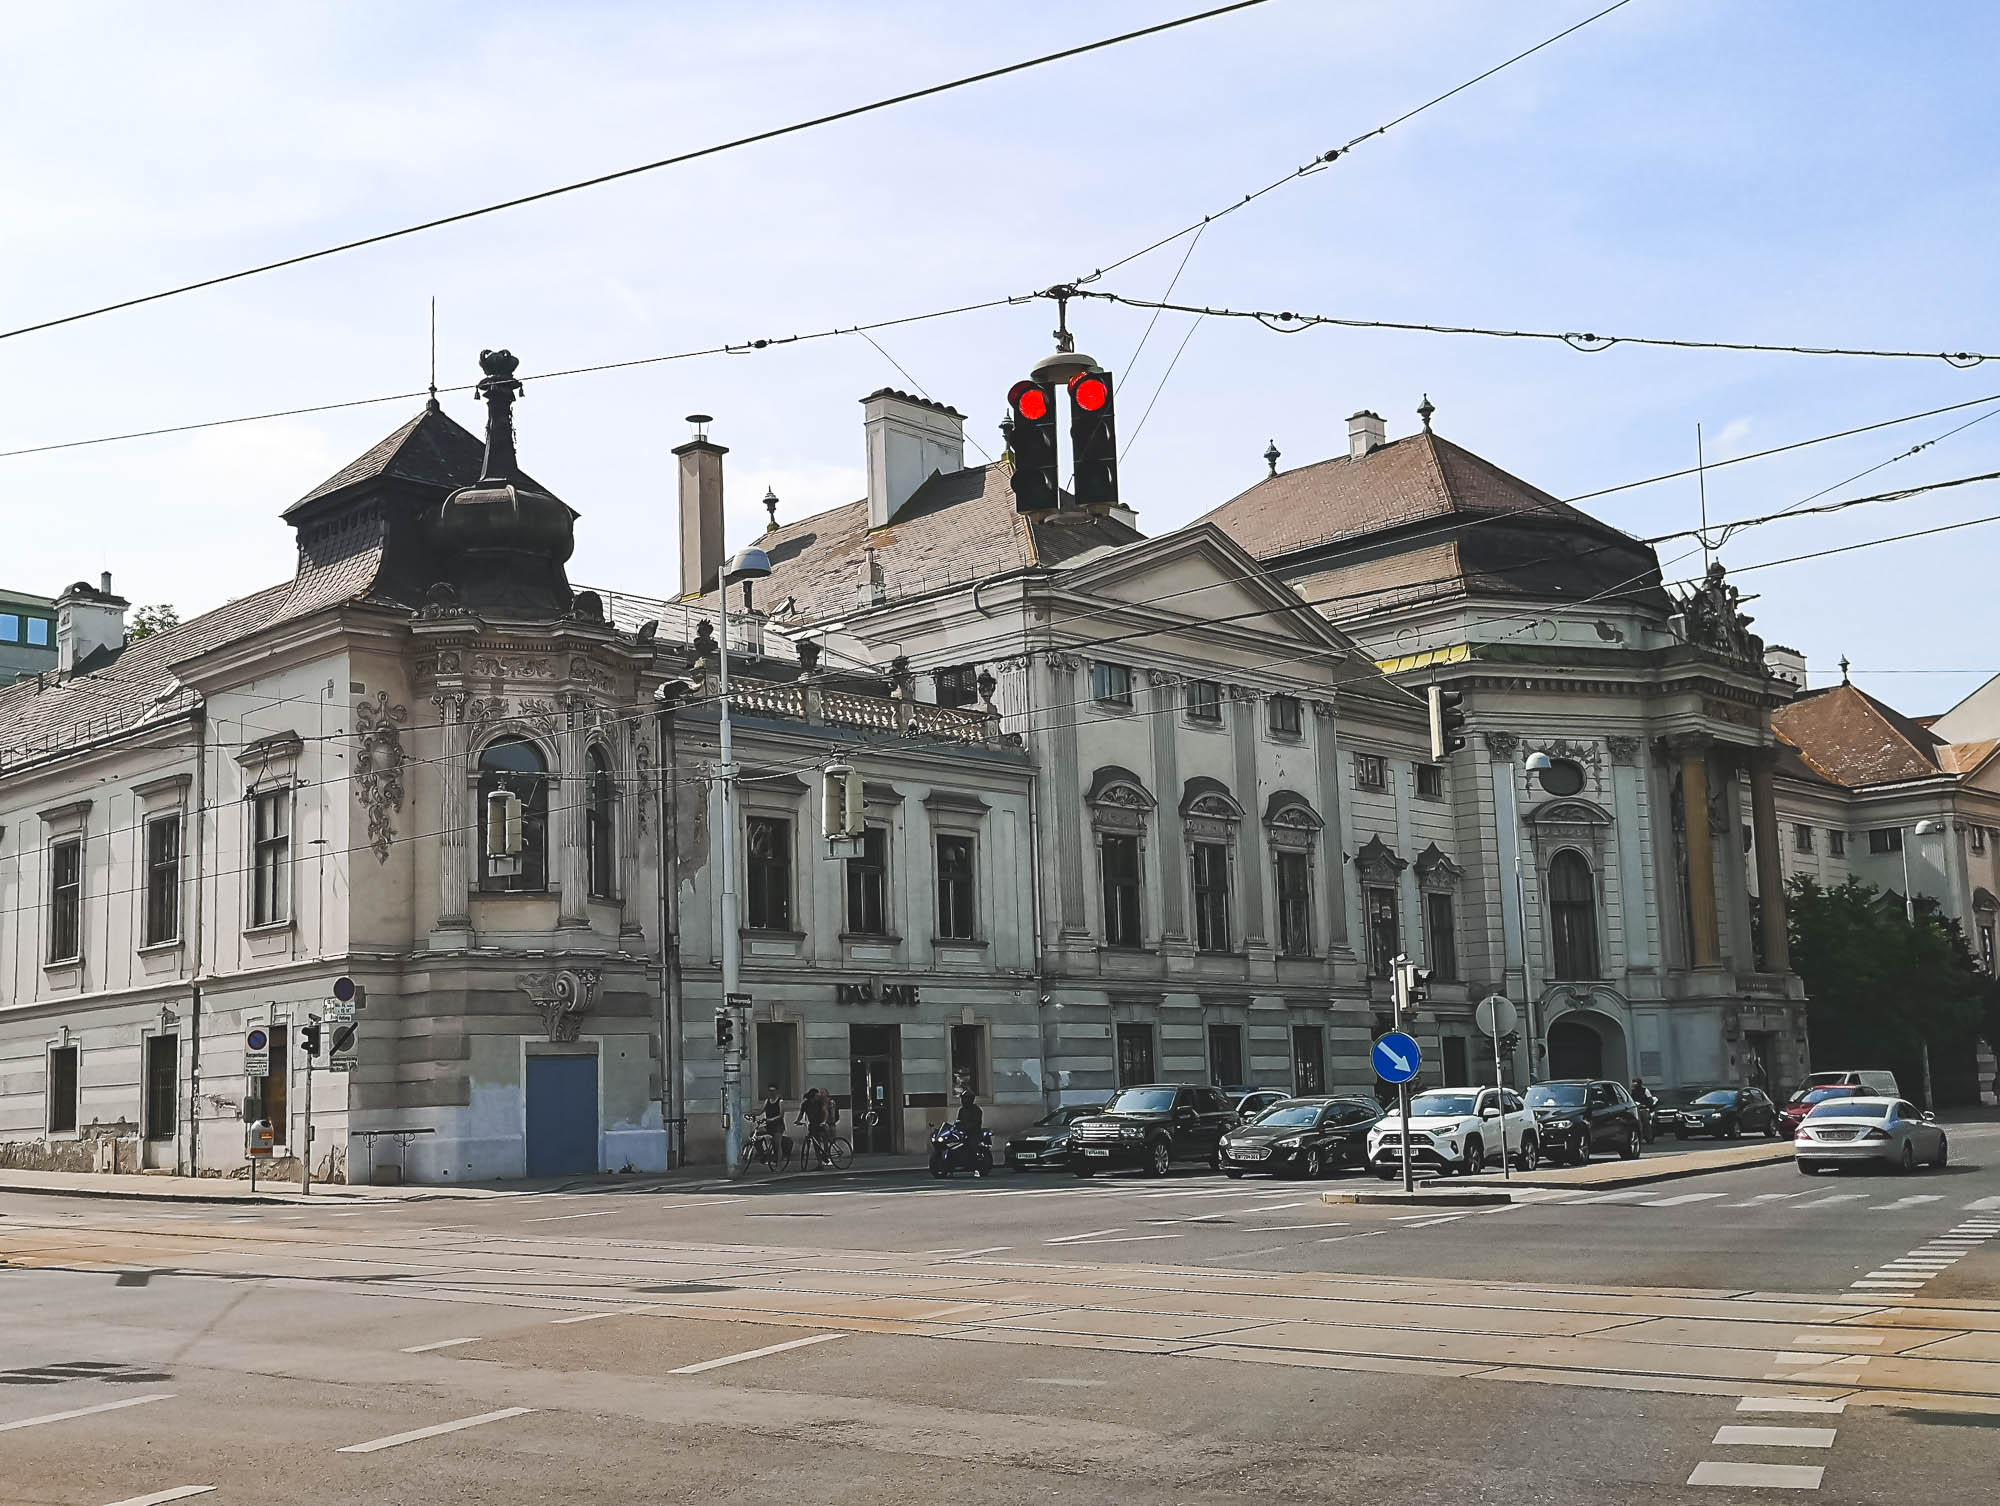 Palais Auersperg in Josefstadt, Vienna